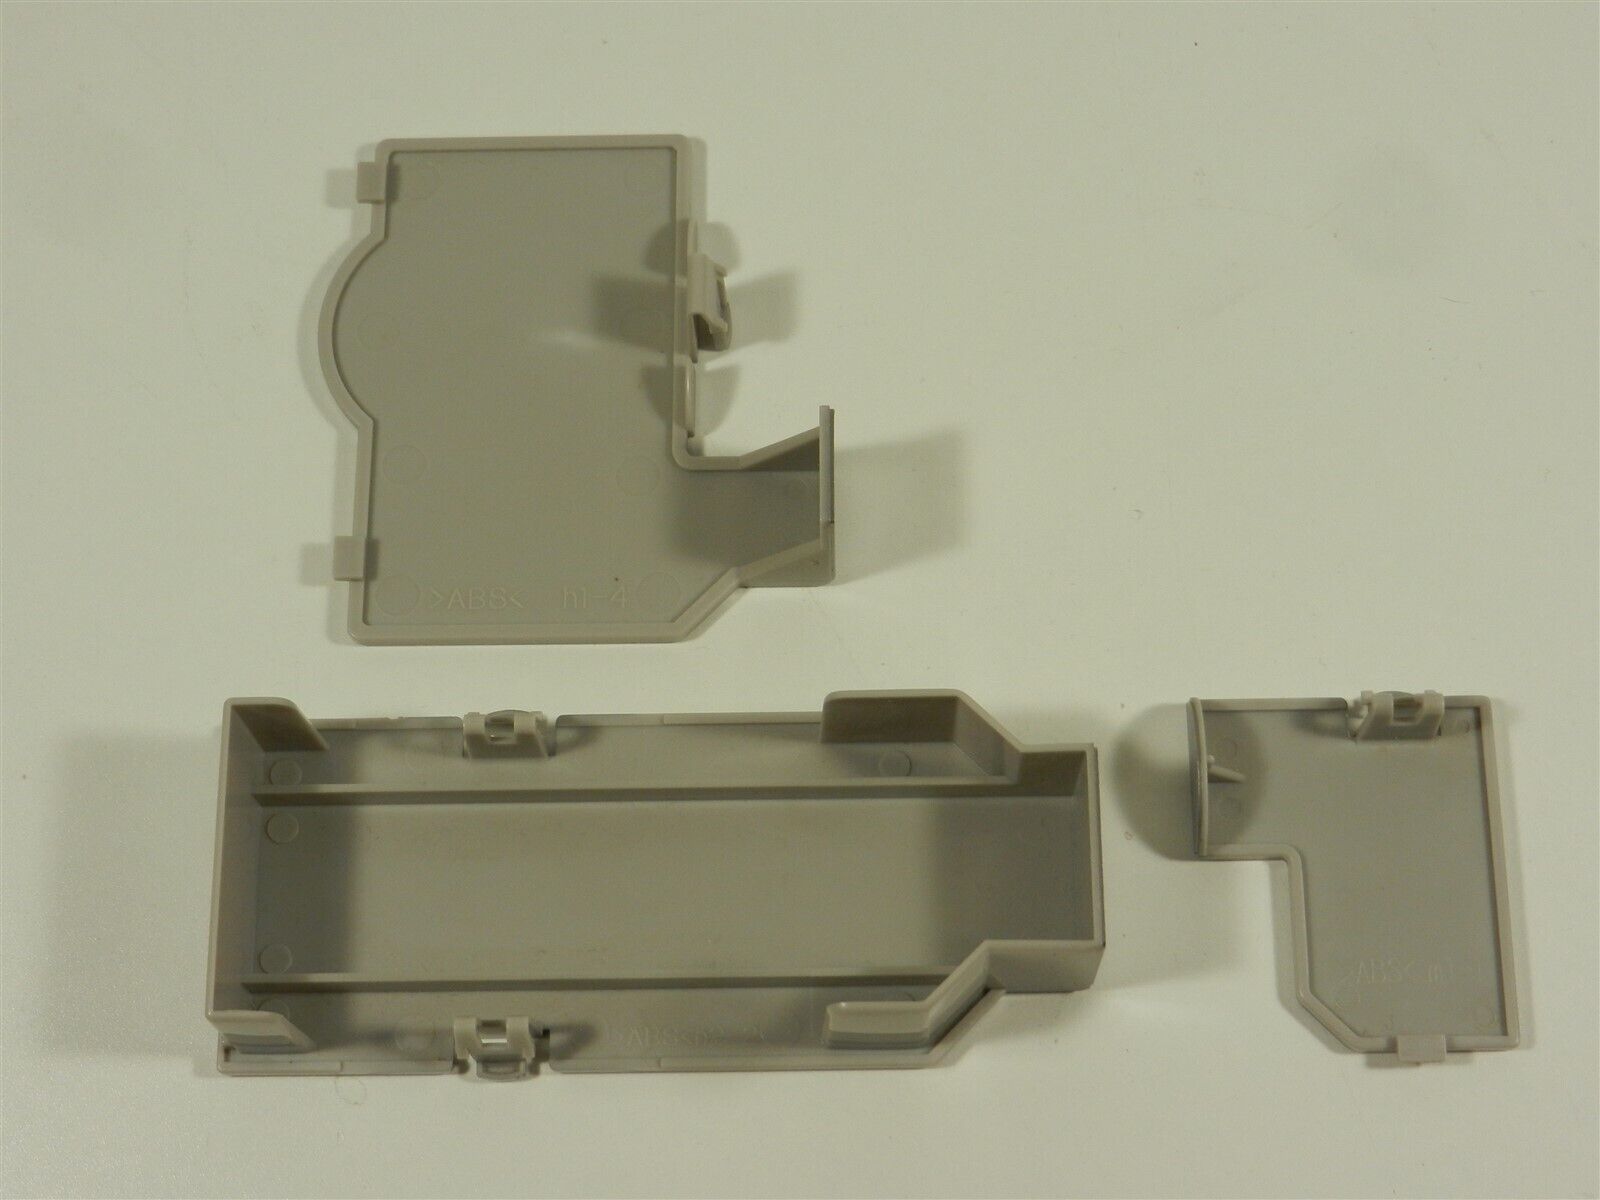 Complete Set of 3 OEM Serial & Hi Speed Port Covers GameCube - Silver/Platinum Nintendo - фотография #2